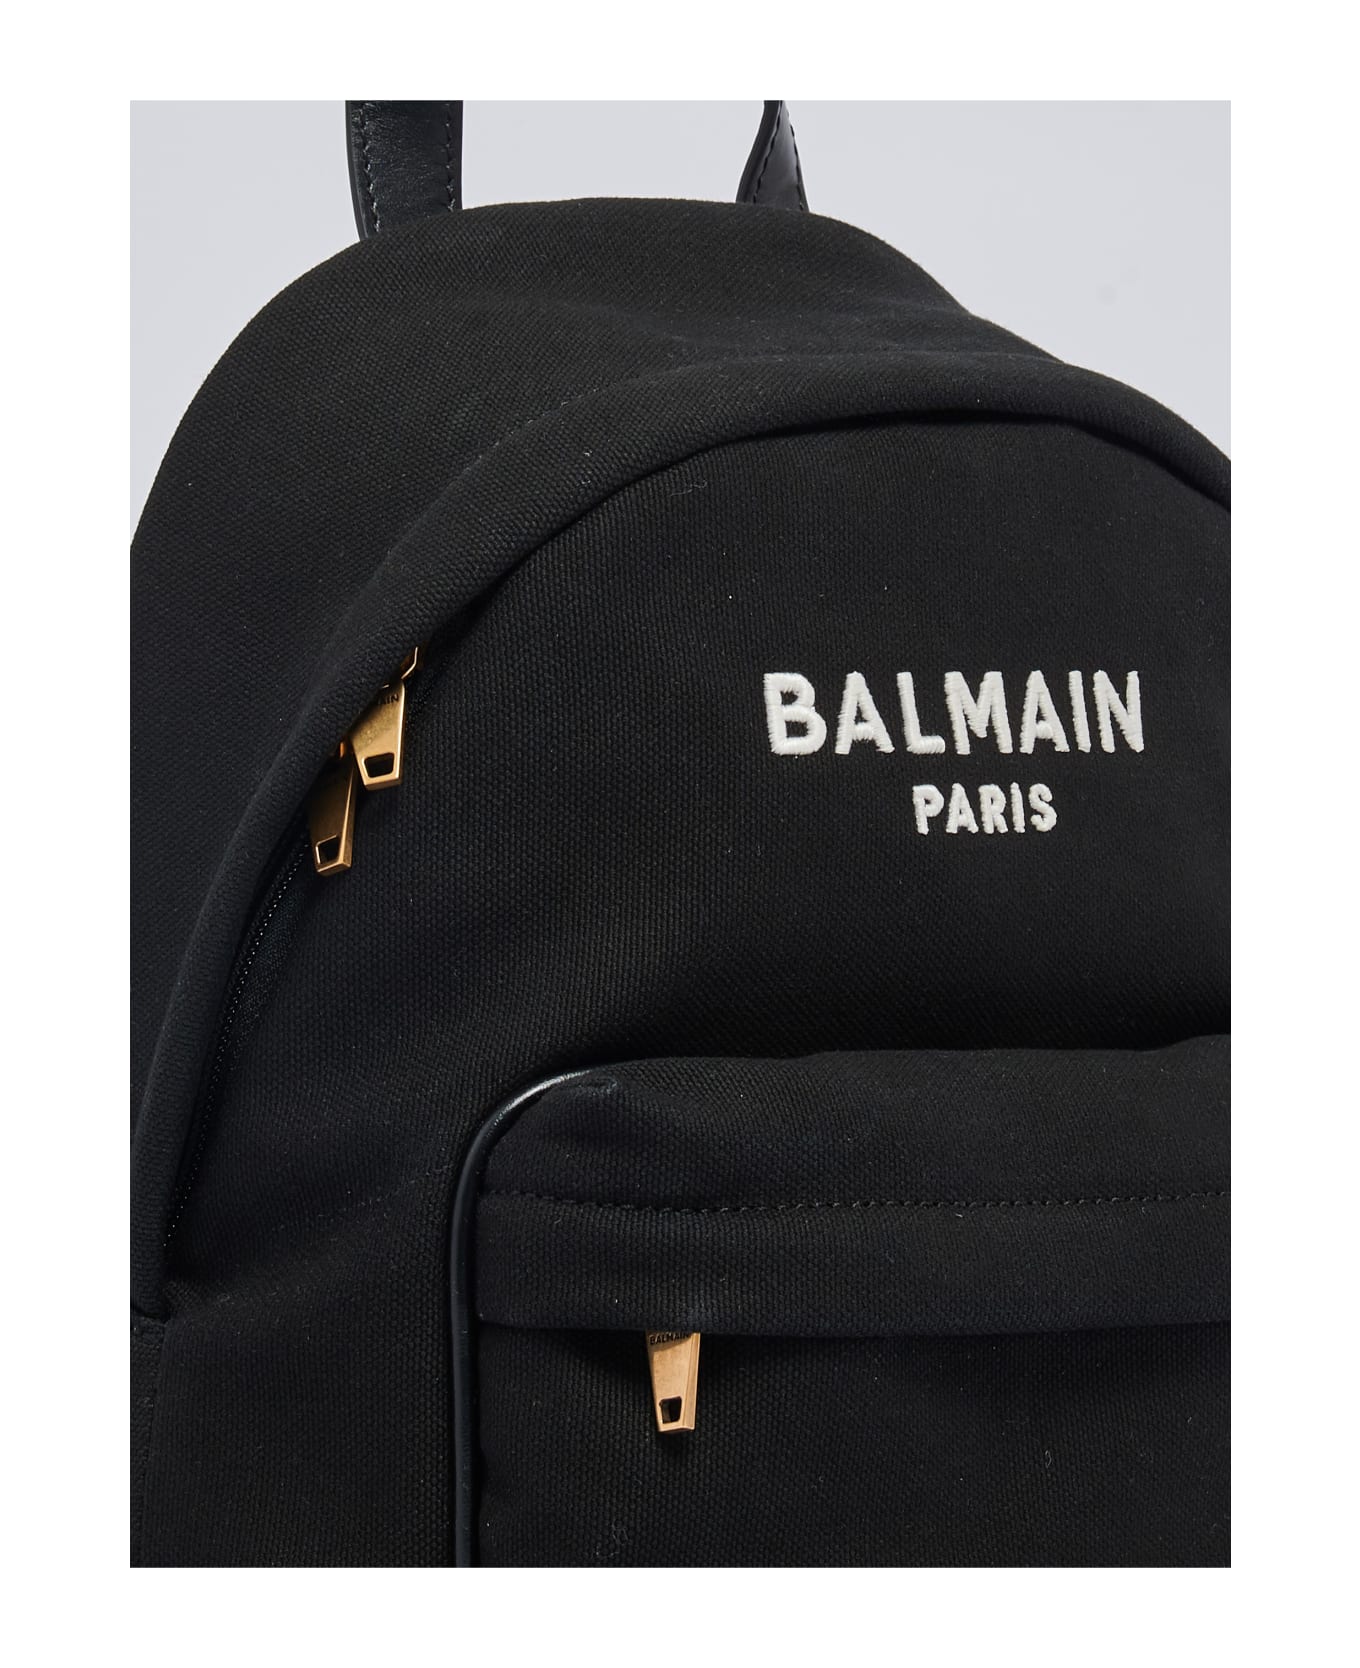 Balmain Backpack Backpack - NERO